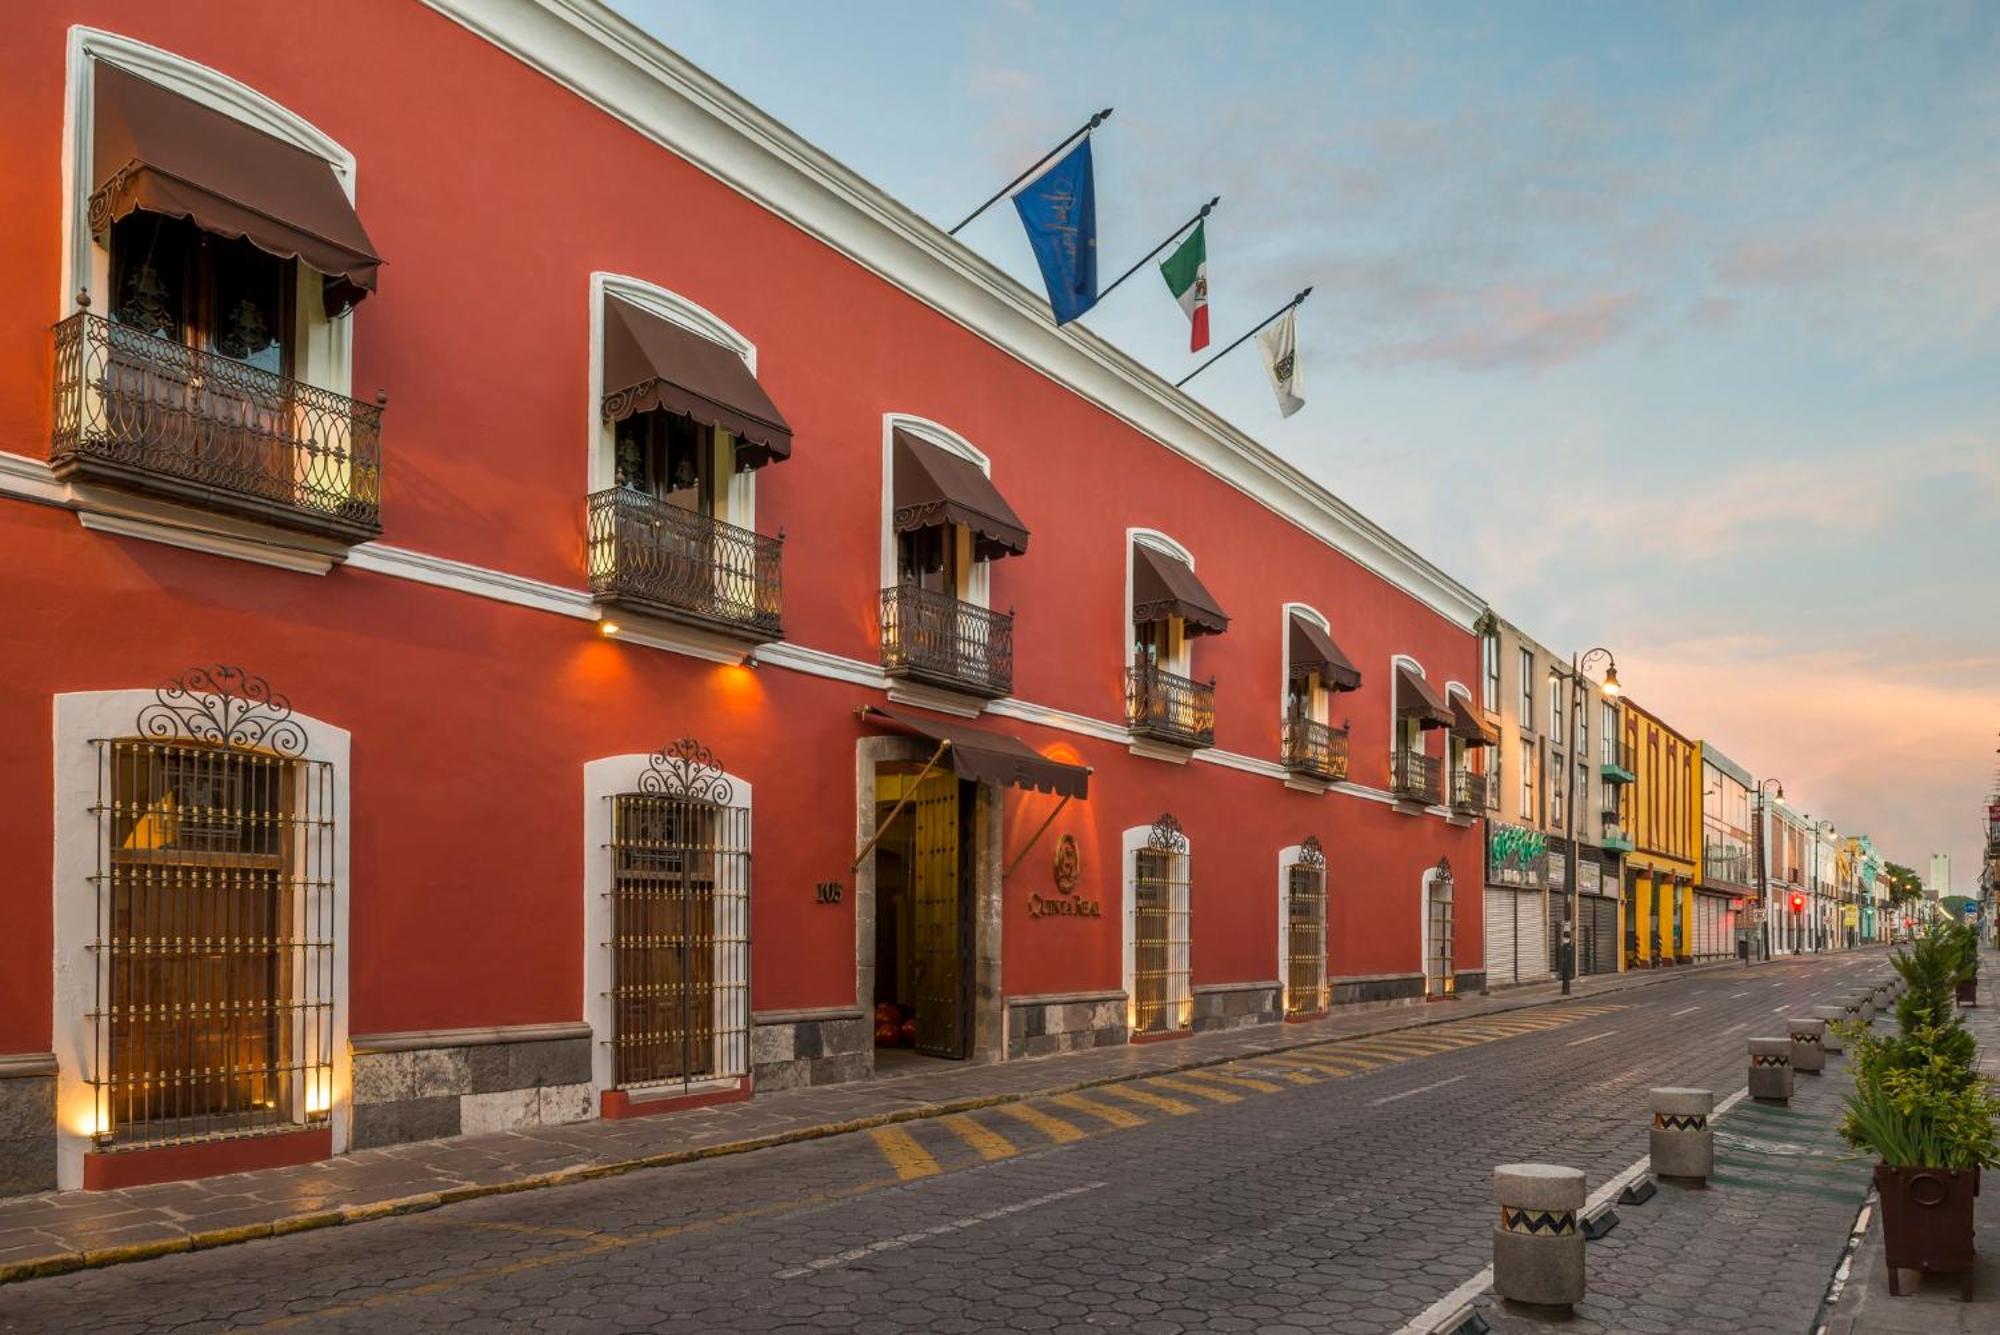 Hotel Quinta Real Puebla Exterior foto